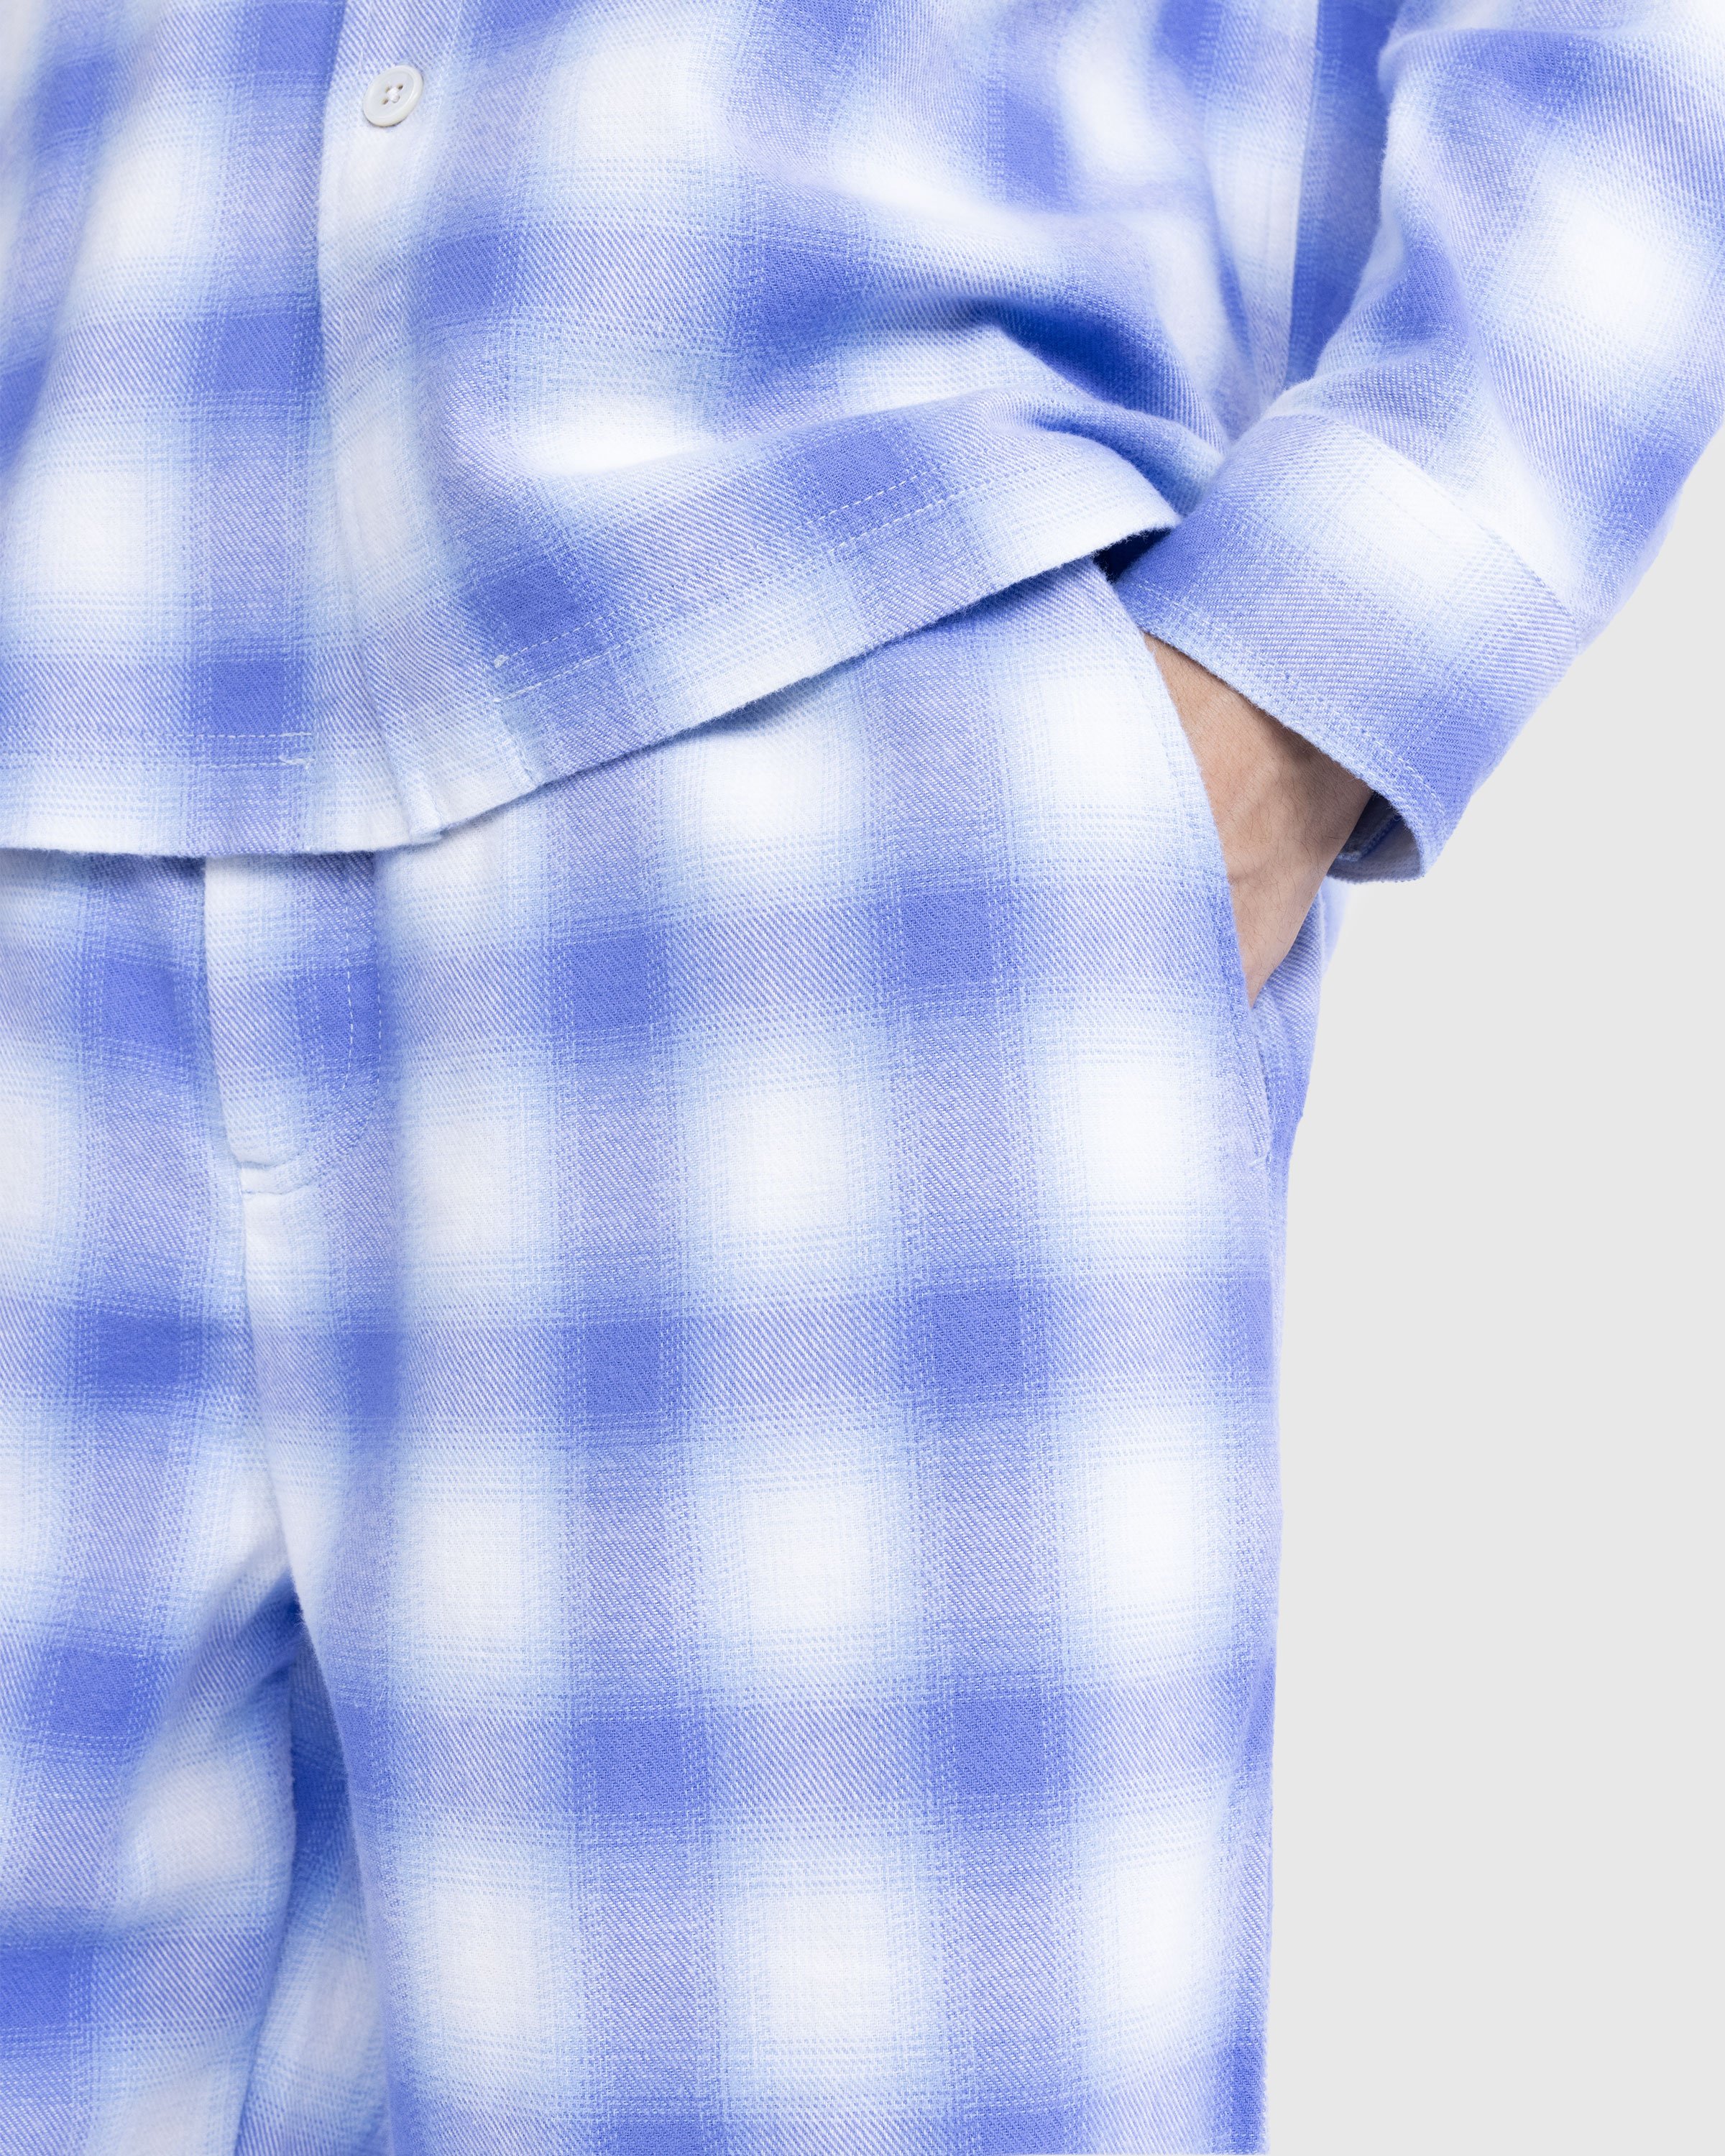 Tekla - Flannel Pyjamas Pants Light Blue Plaid - Clothing - Blue - Image 4